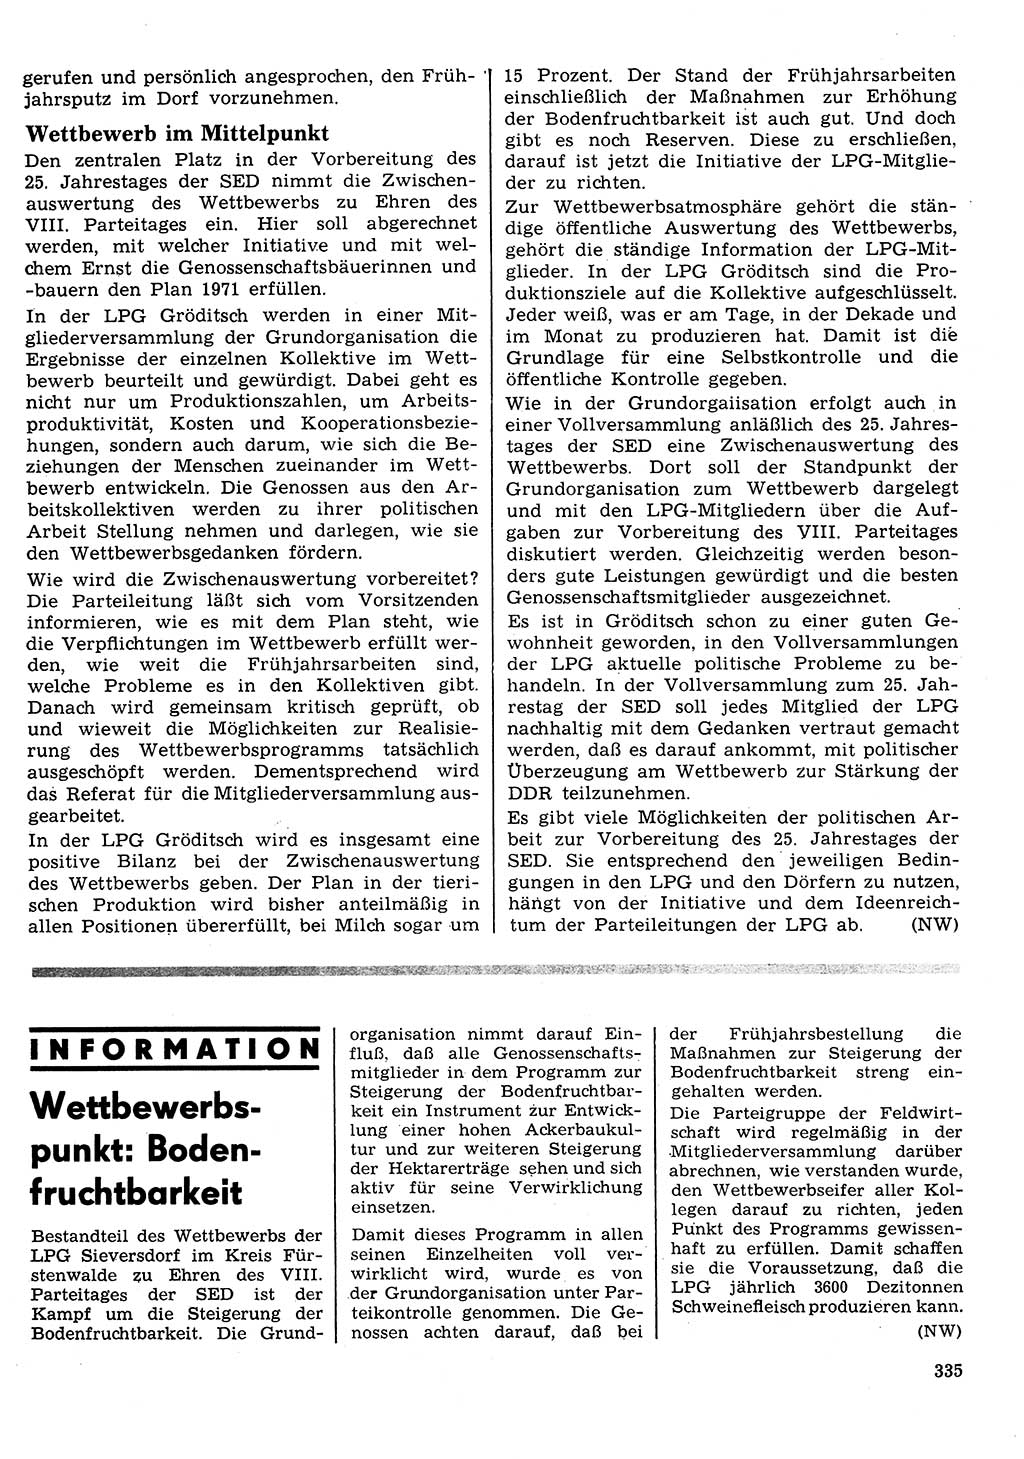 Neuer Weg (NW), Organ des Zentralkomitees (ZK) der SED (Sozialistische Einheitspartei Deutschlands) für Fragen des Parteilebens, 26. Jahrgang [Deutsche Demokratische Republik (DDR)] 1971, Seite 335 (NW ZK SED DDR 1971, S. 335)